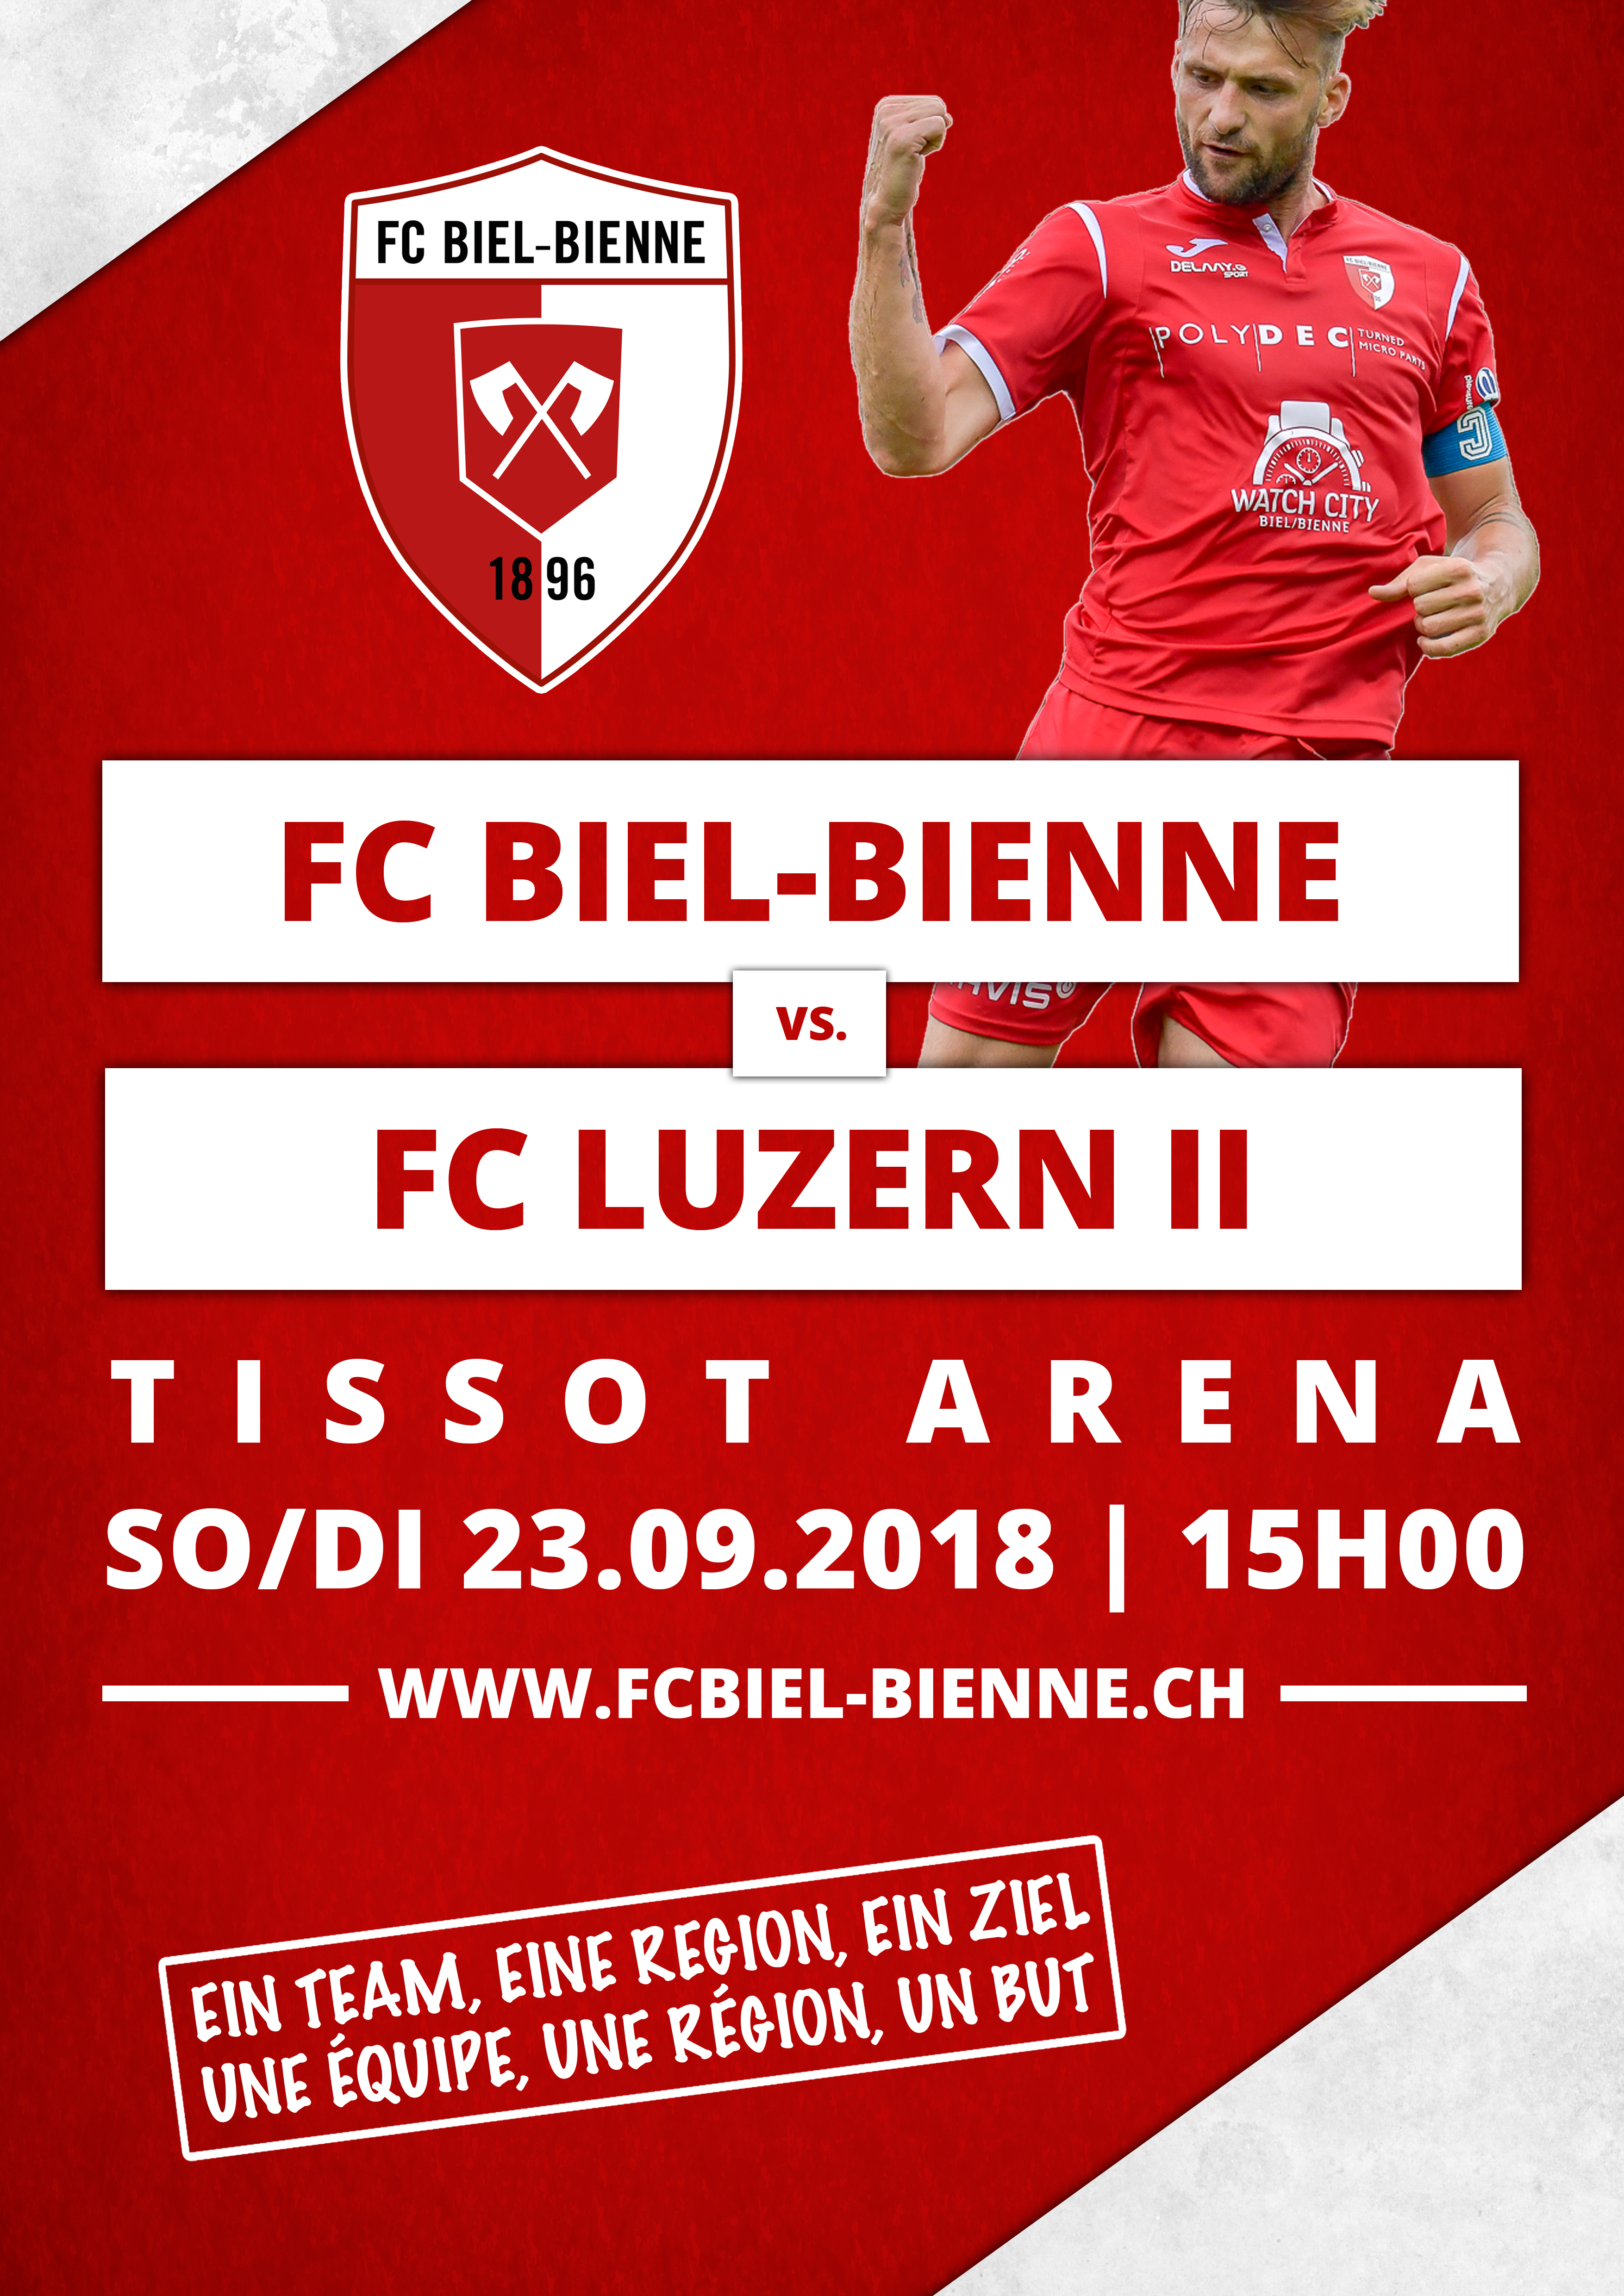 FC Biel-Bienne vs. FC Luzern II